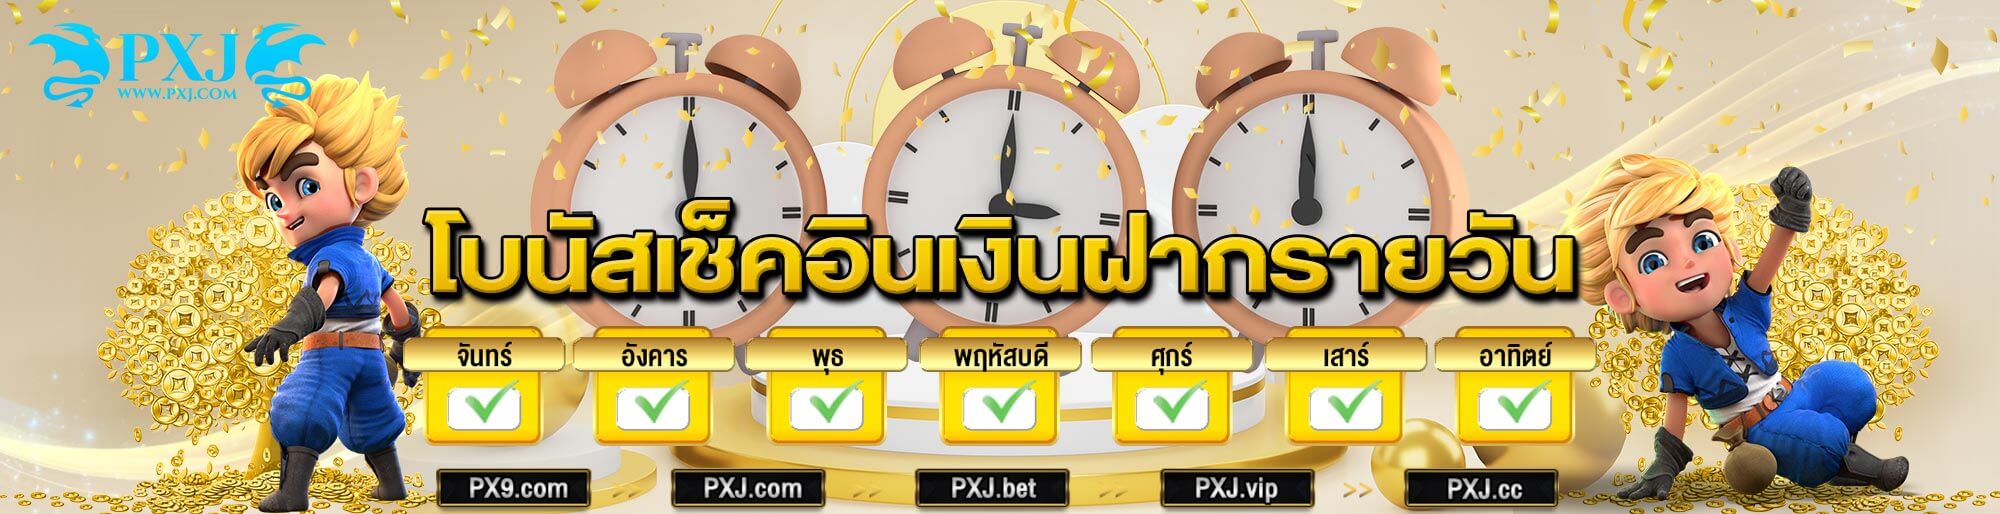 Pxj Thai Banners (4)